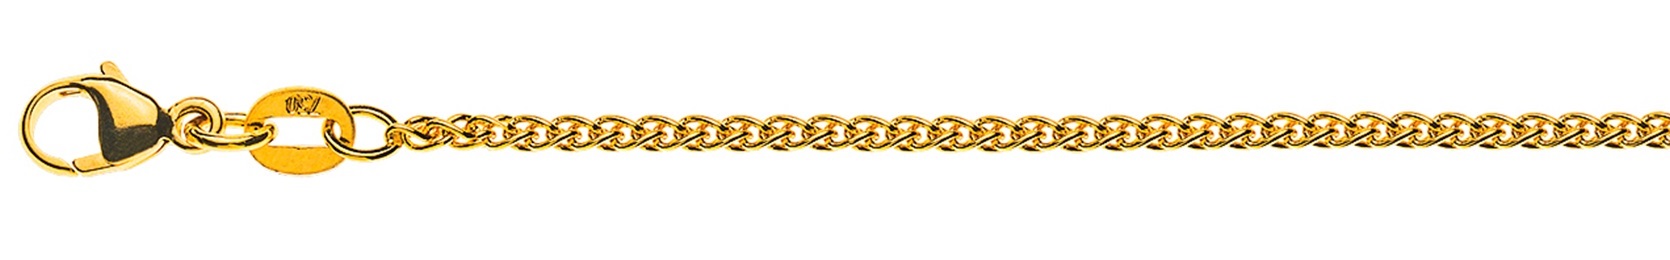 AURONOS Élégance Necklace yellow gold 14K cable chain 55cm 1.6mm